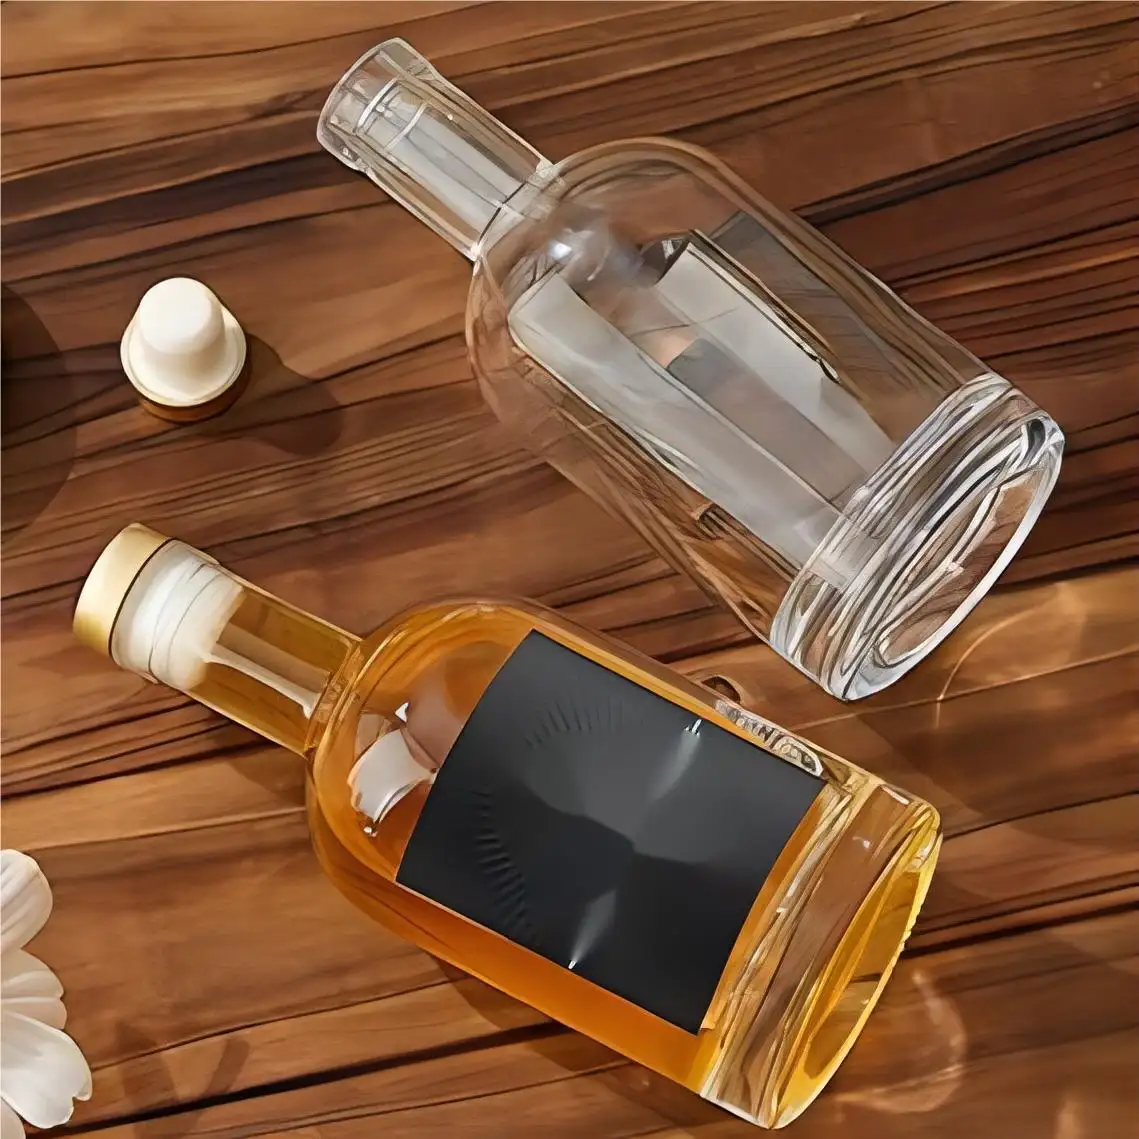 Schlussverkauf individuelle Spirituosenflasche hohe Qualität schnelle Lieferung Whiskey Wodka Brandy Rum Flaschen Glas Alkoholflasche hergestellt in China